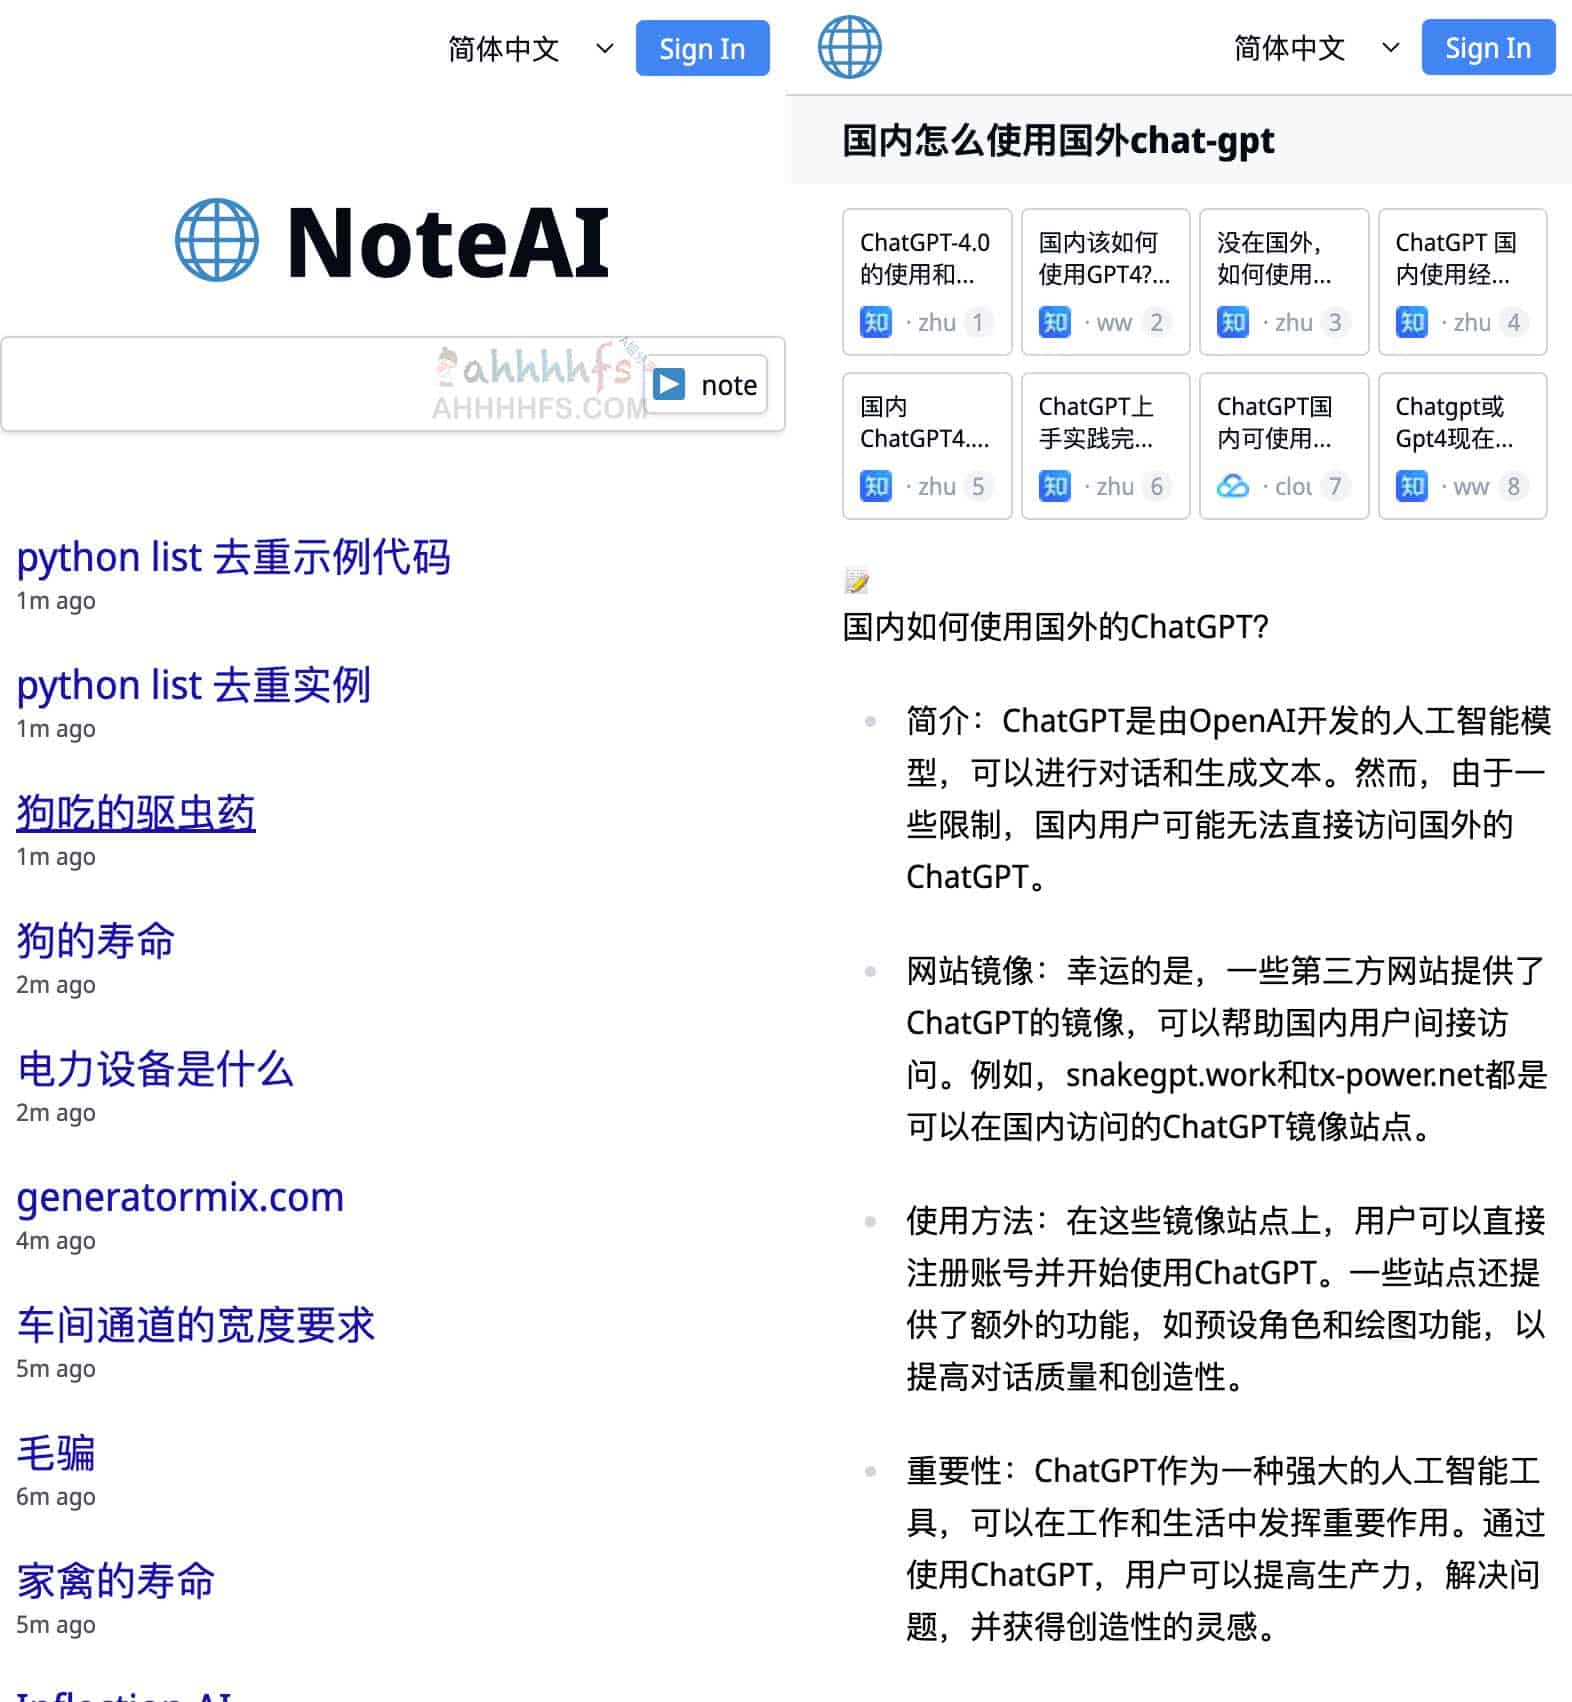 智能AI搜索引擎 概括任何网页或搜索结果-NoteAI